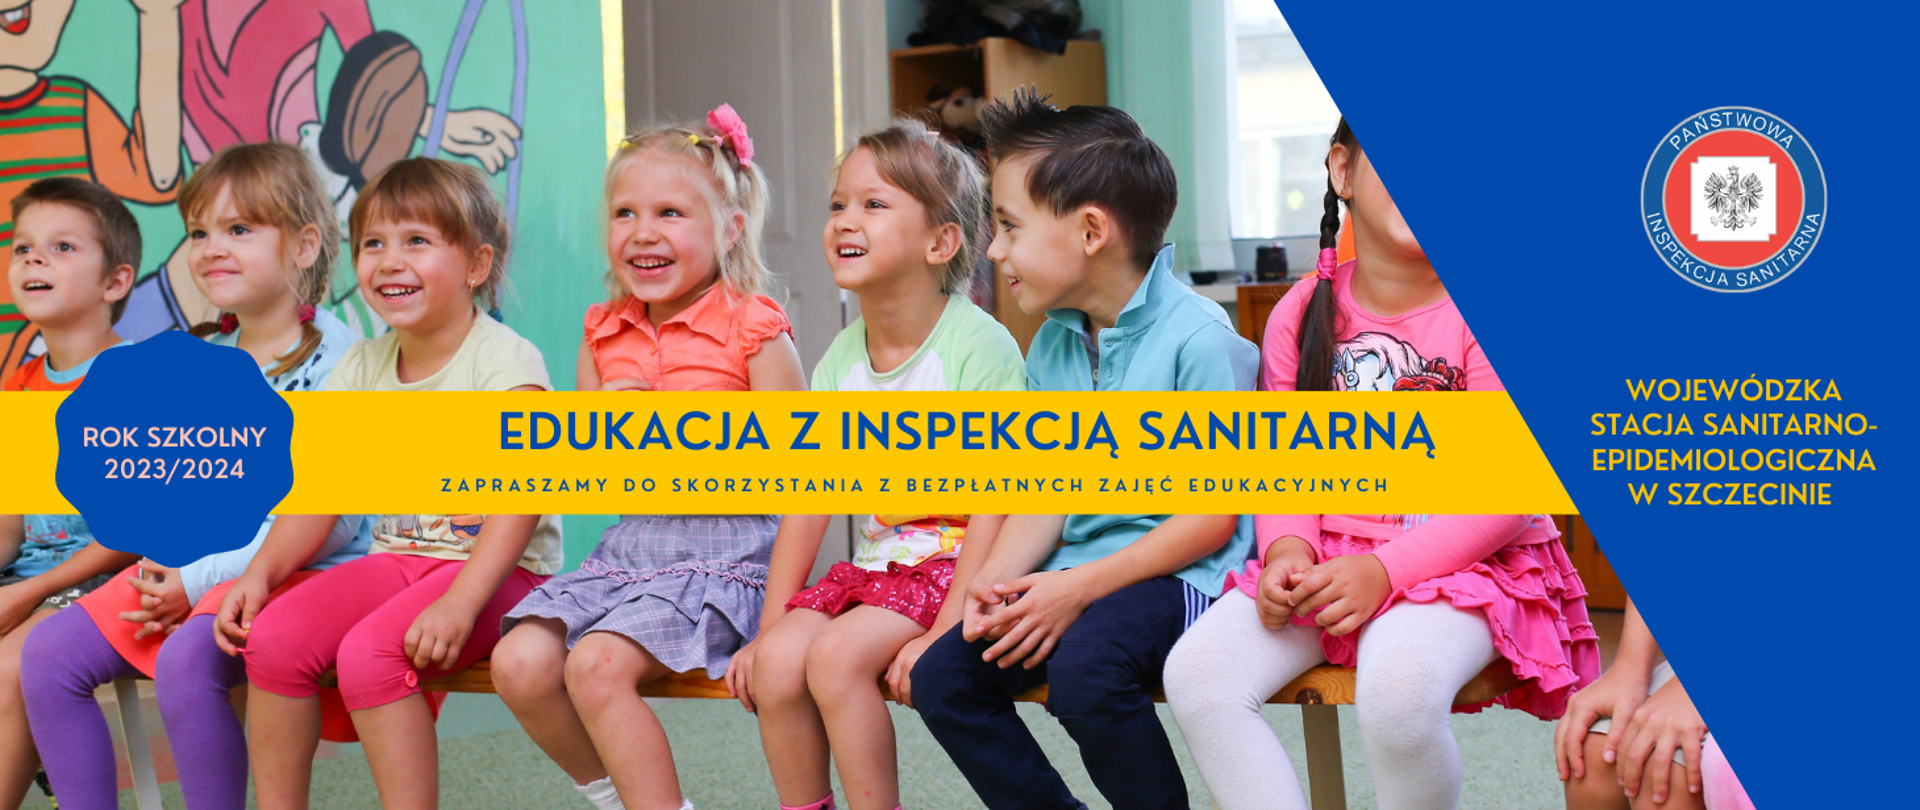 Zdjęcie dzieci w wieku przedszkolnym, hasło „Edukacja z Inspekcją Sanitarną” oraz Wojewódzka Stacja Sanitarno-Epidemiologiczna w Szczecinie i logo Państwowej Inspekcji Sanitarnej.